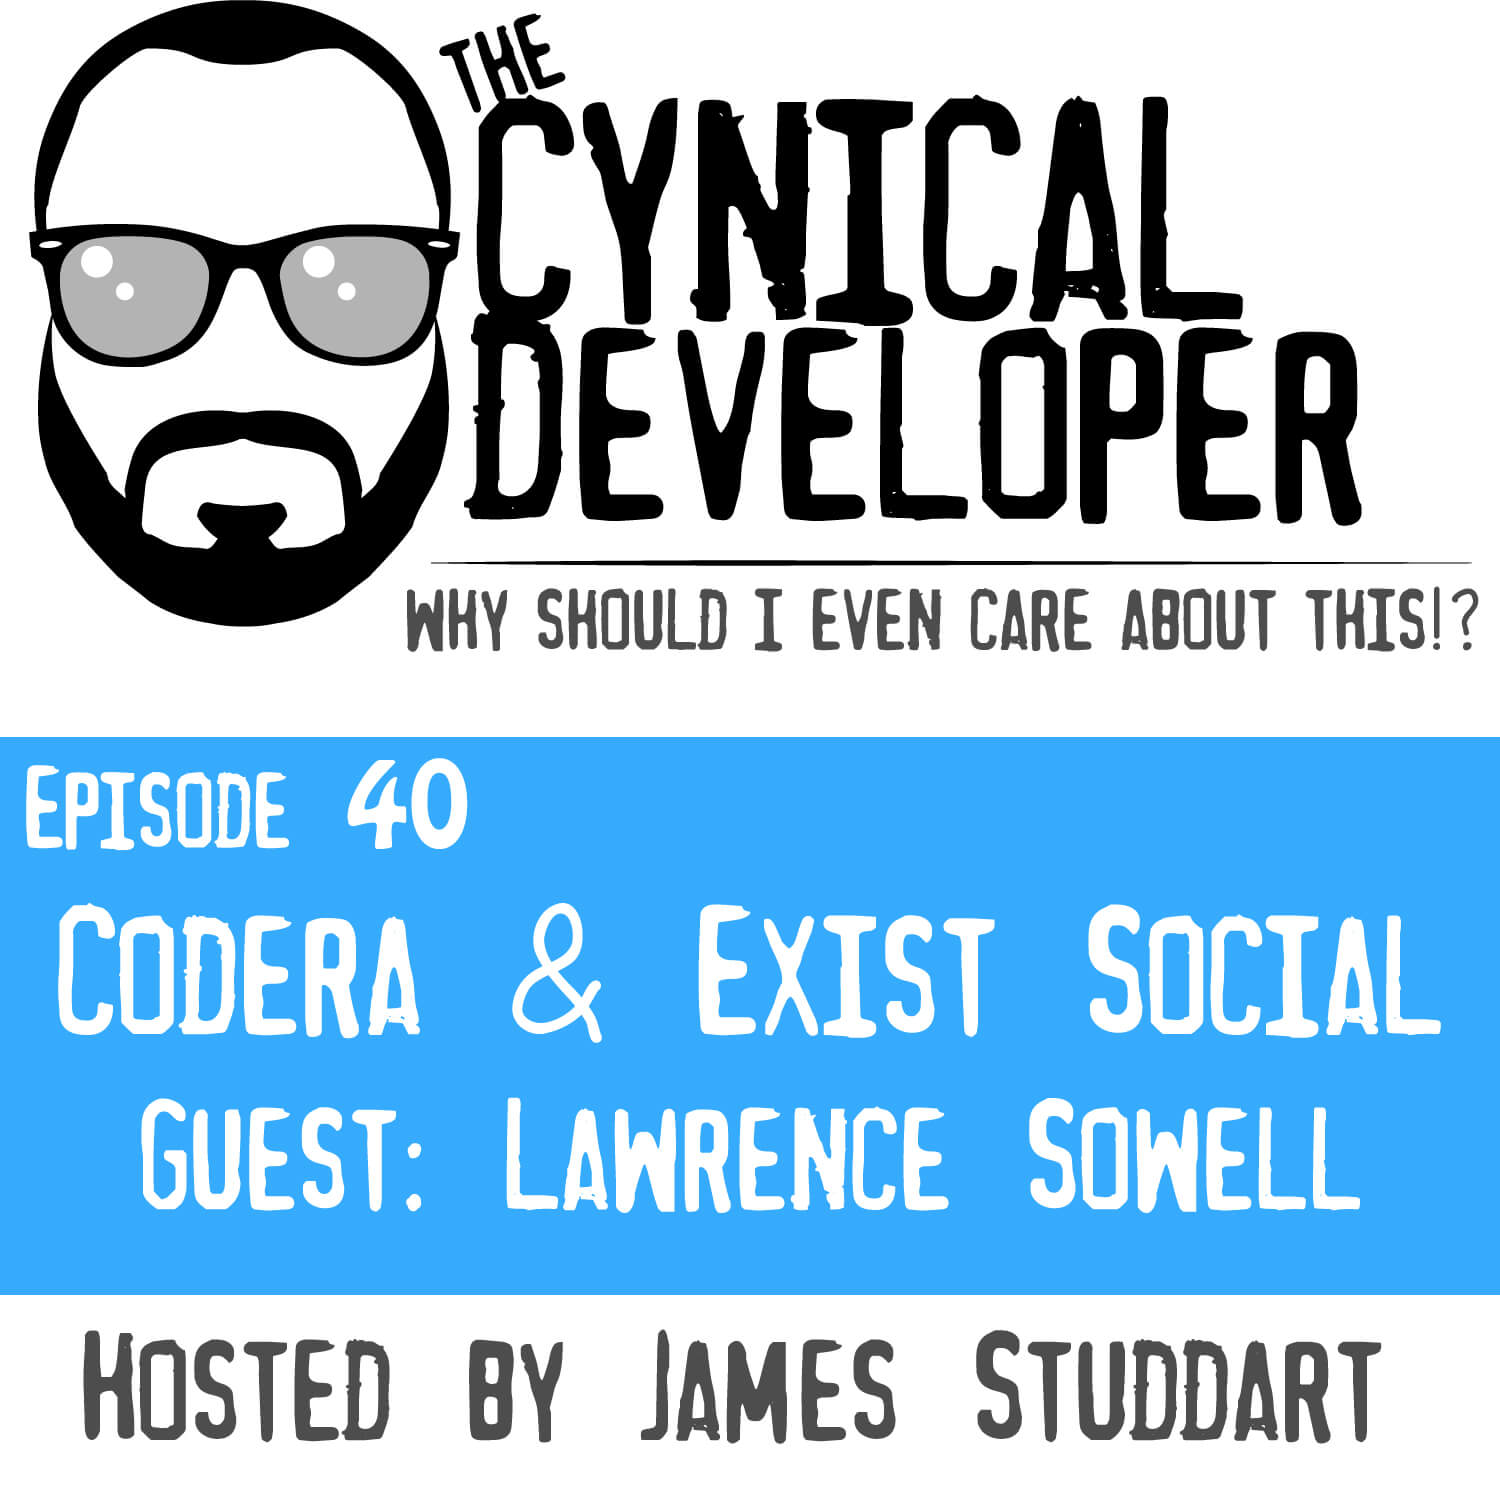 Episode 40 - Codera & Exist Social